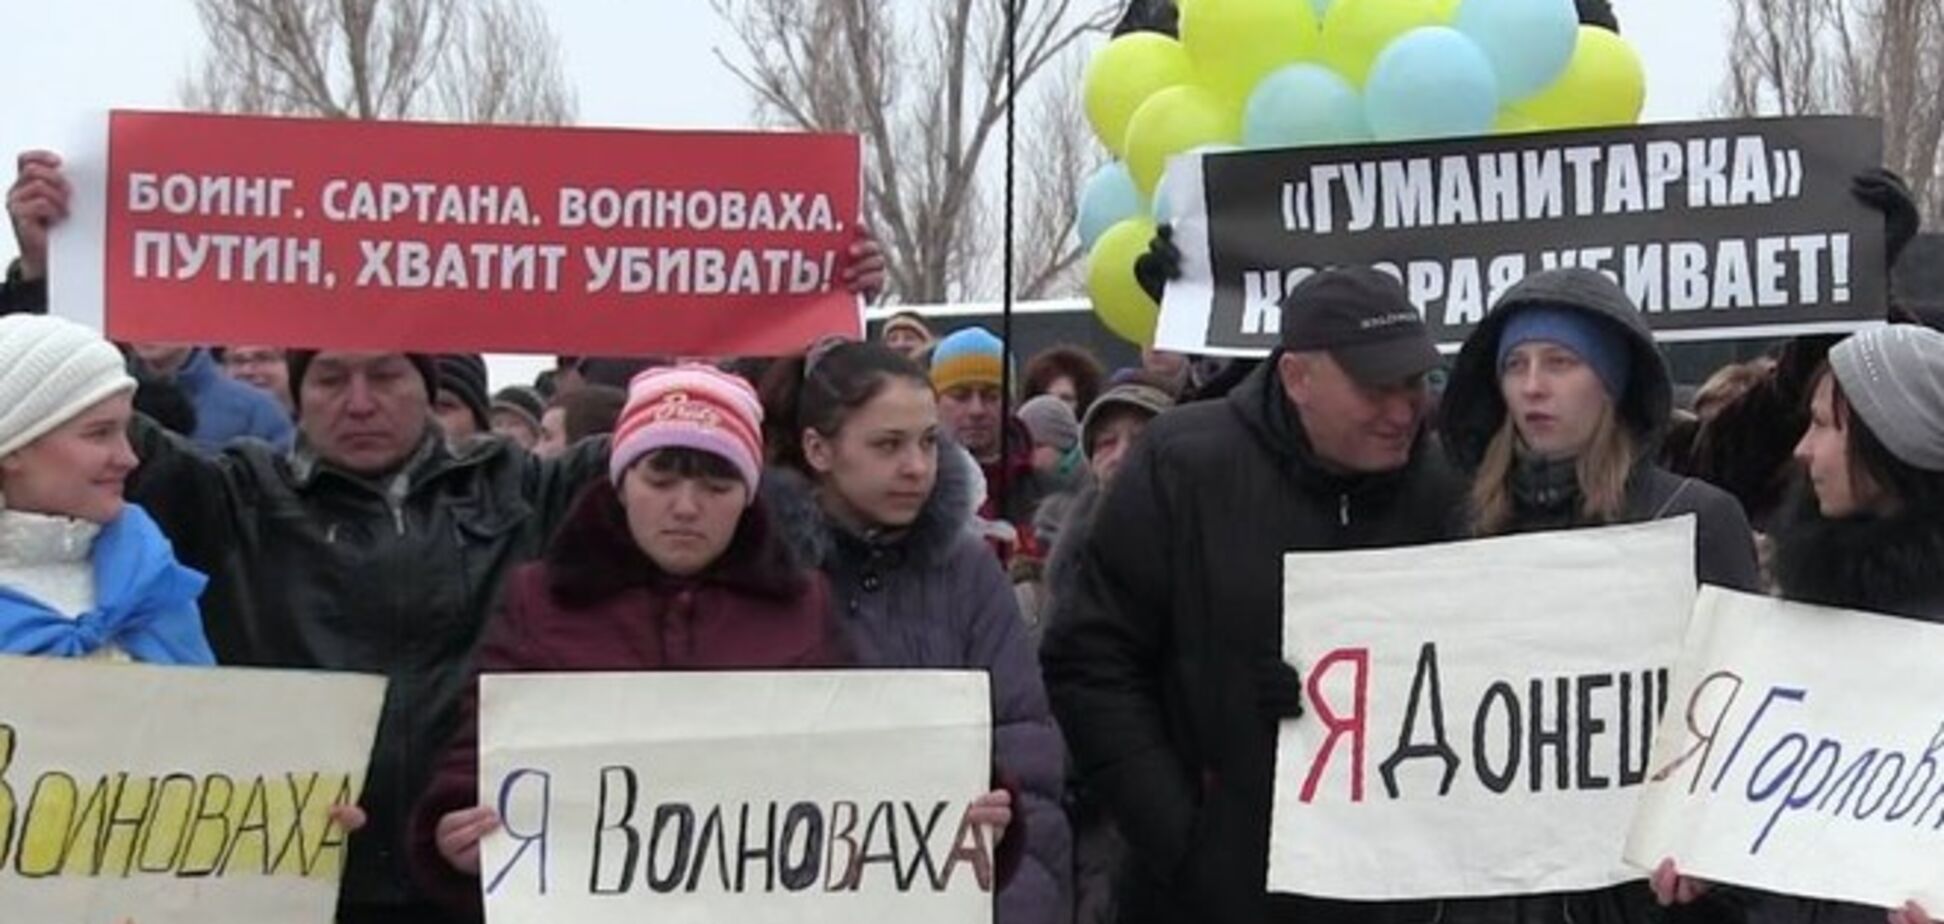 Мариупольцы вышли на митинг с лозунгом 'Путин, хватит убивать!': опубликованы фото